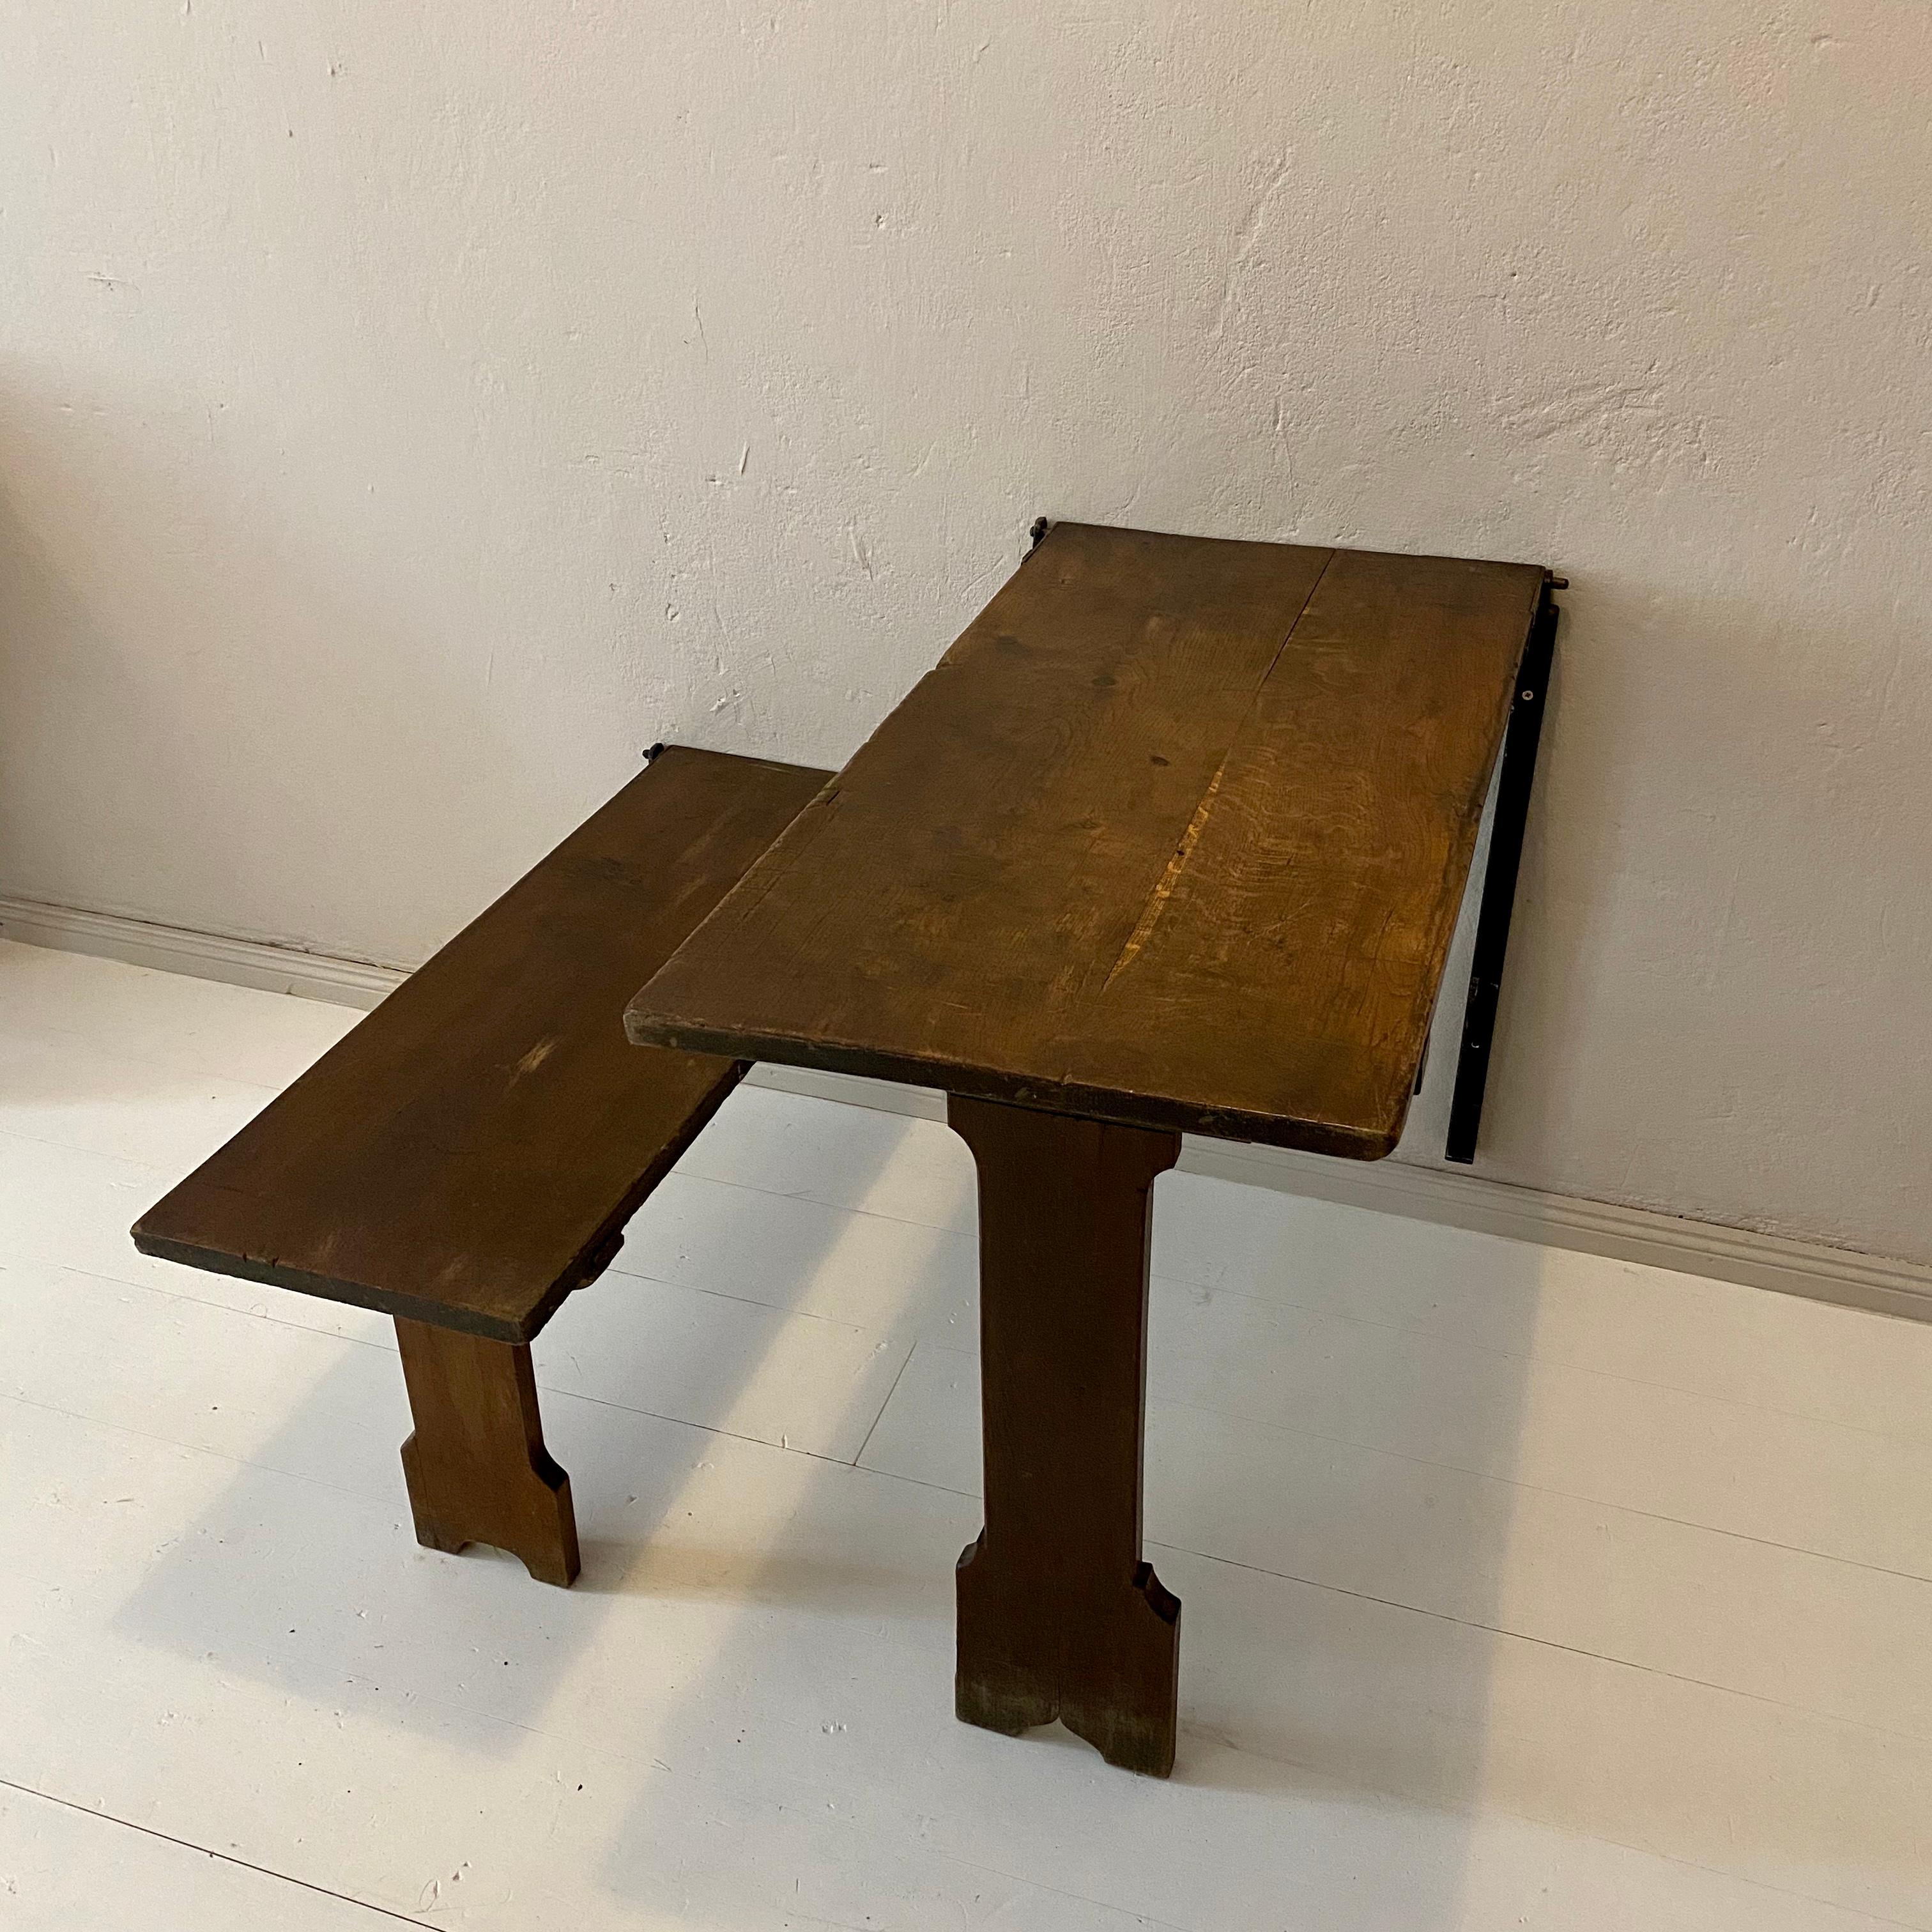 Cette table et ce banc de prison Wabi Sabi Naive de style Art déco allemand ont été fabriqués dans les années 1930 pour une prison de Berlin.
Elle est fabriquée en chêne brun et le plateau présente de jolies sculptures naïves, comme un échiquier et